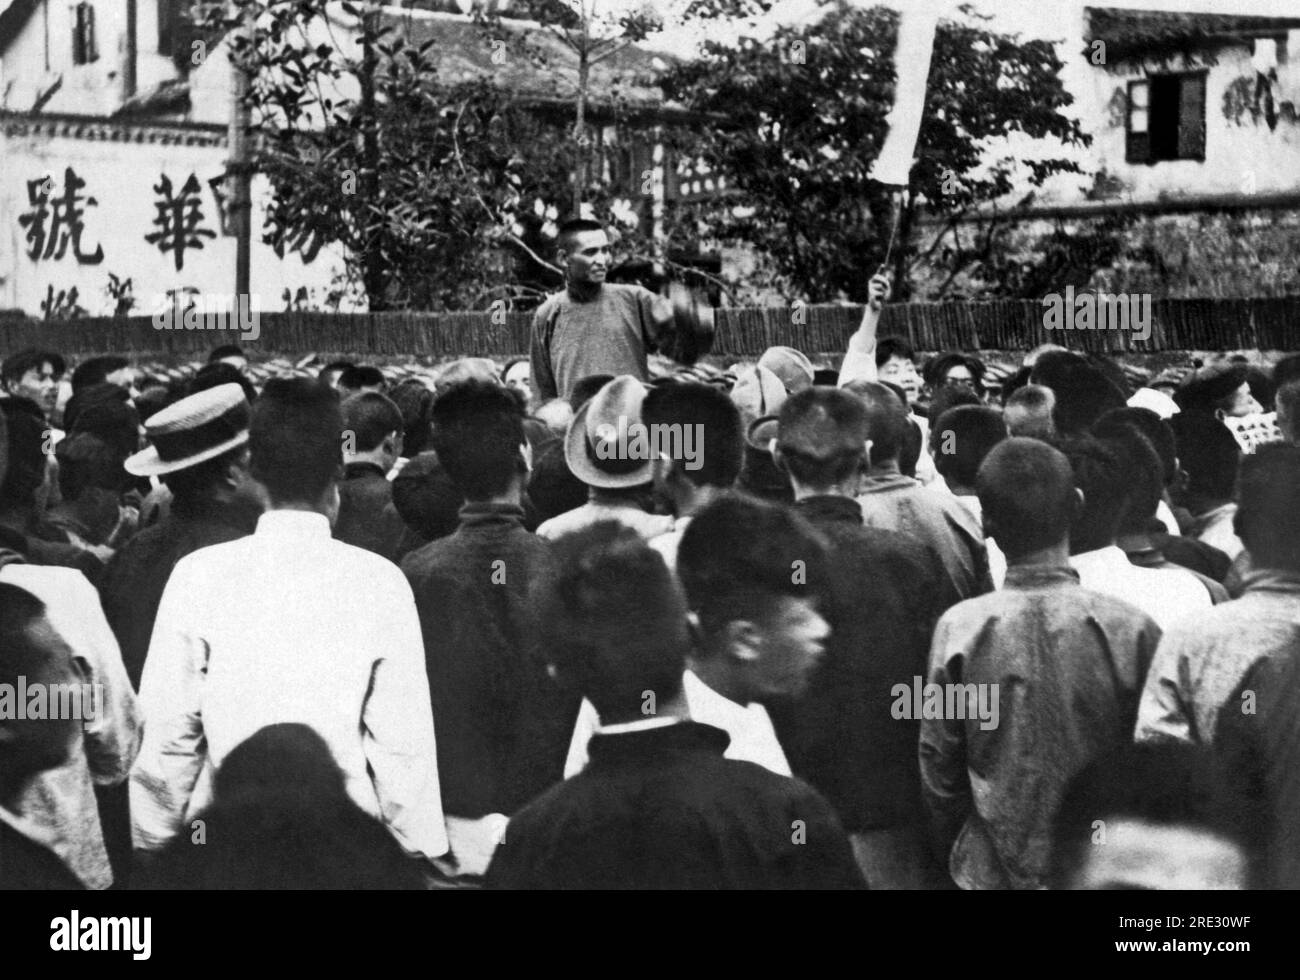 Shanghai, Cina: 16 febbraio 1927 Un incontro di scioperanti a Shanghai incitato da un agitatore nazionalista. La crisi in questo caso si sta aggravando con la frequenza di scioperi e disordini, e con l'insediamento di Shanghai si mettono a repentaglio la vita degli stranieri. Foto Stock